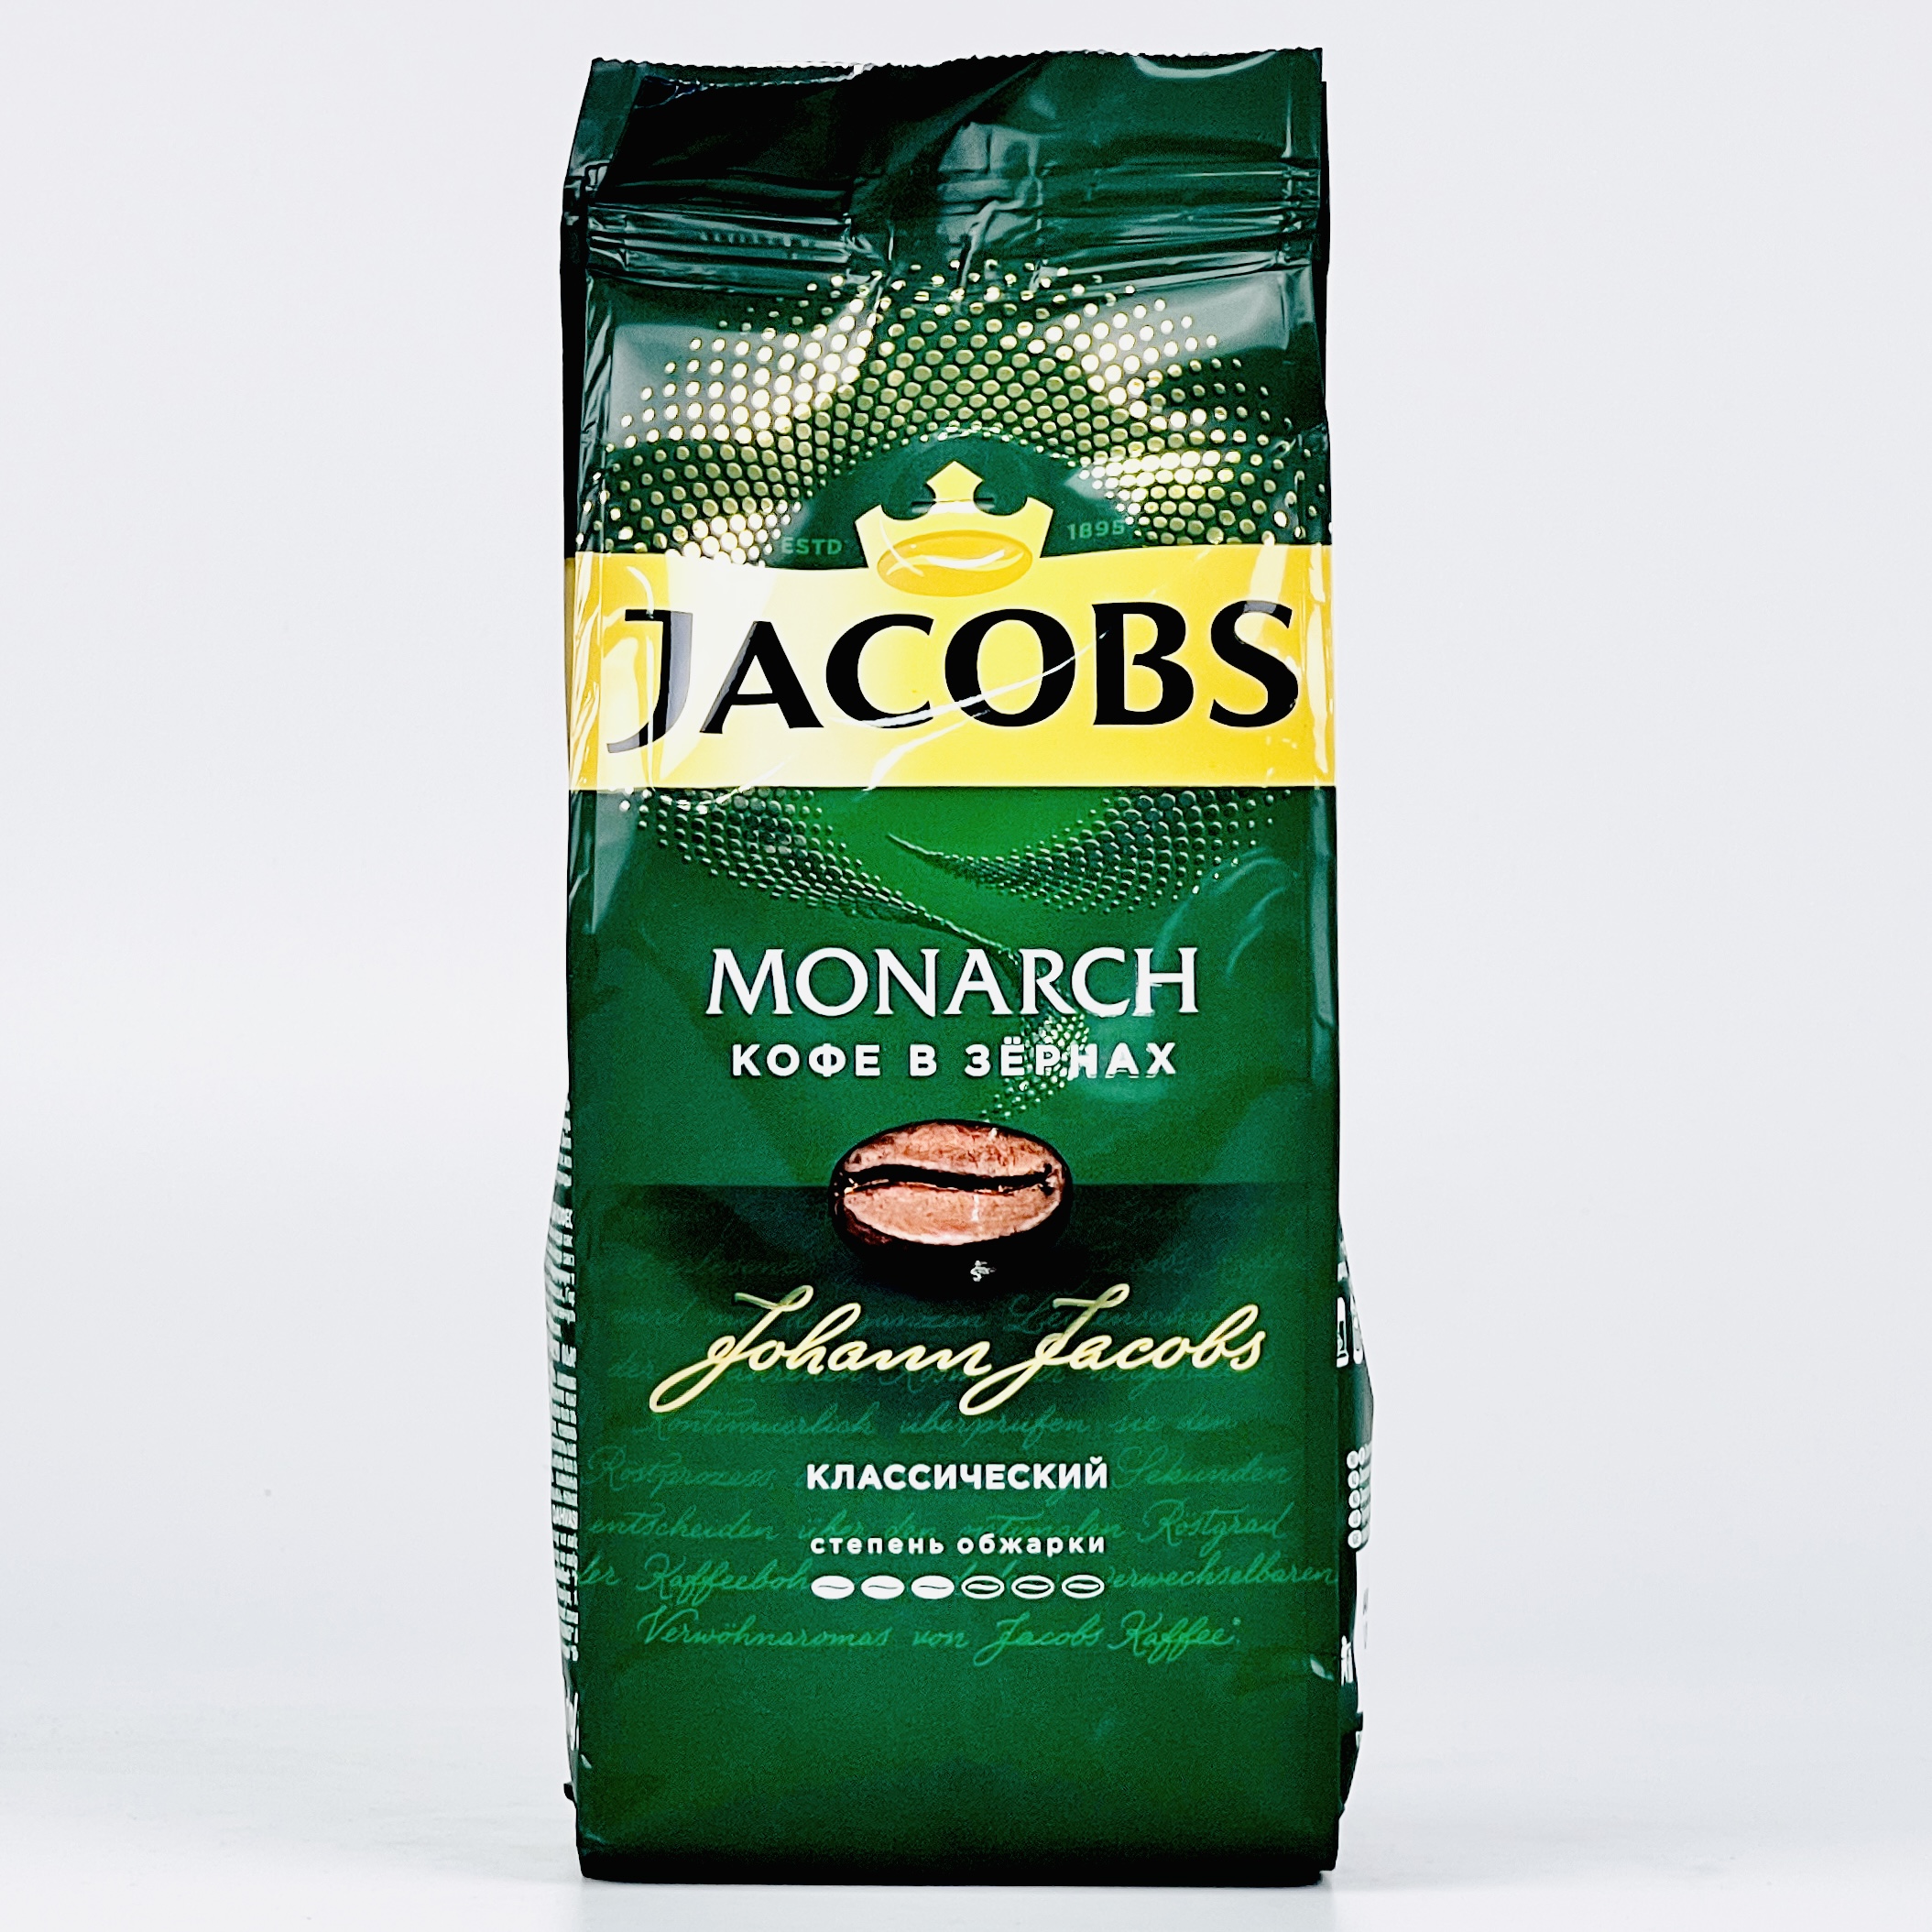 Рейтинг хорошего кофе в зернах отзывы. Jacobs кофе в зернах. Jacobs Monarch в зернах. Кофе в зернах Jacobs Monarch. Якобс в зернах 800 грамм.